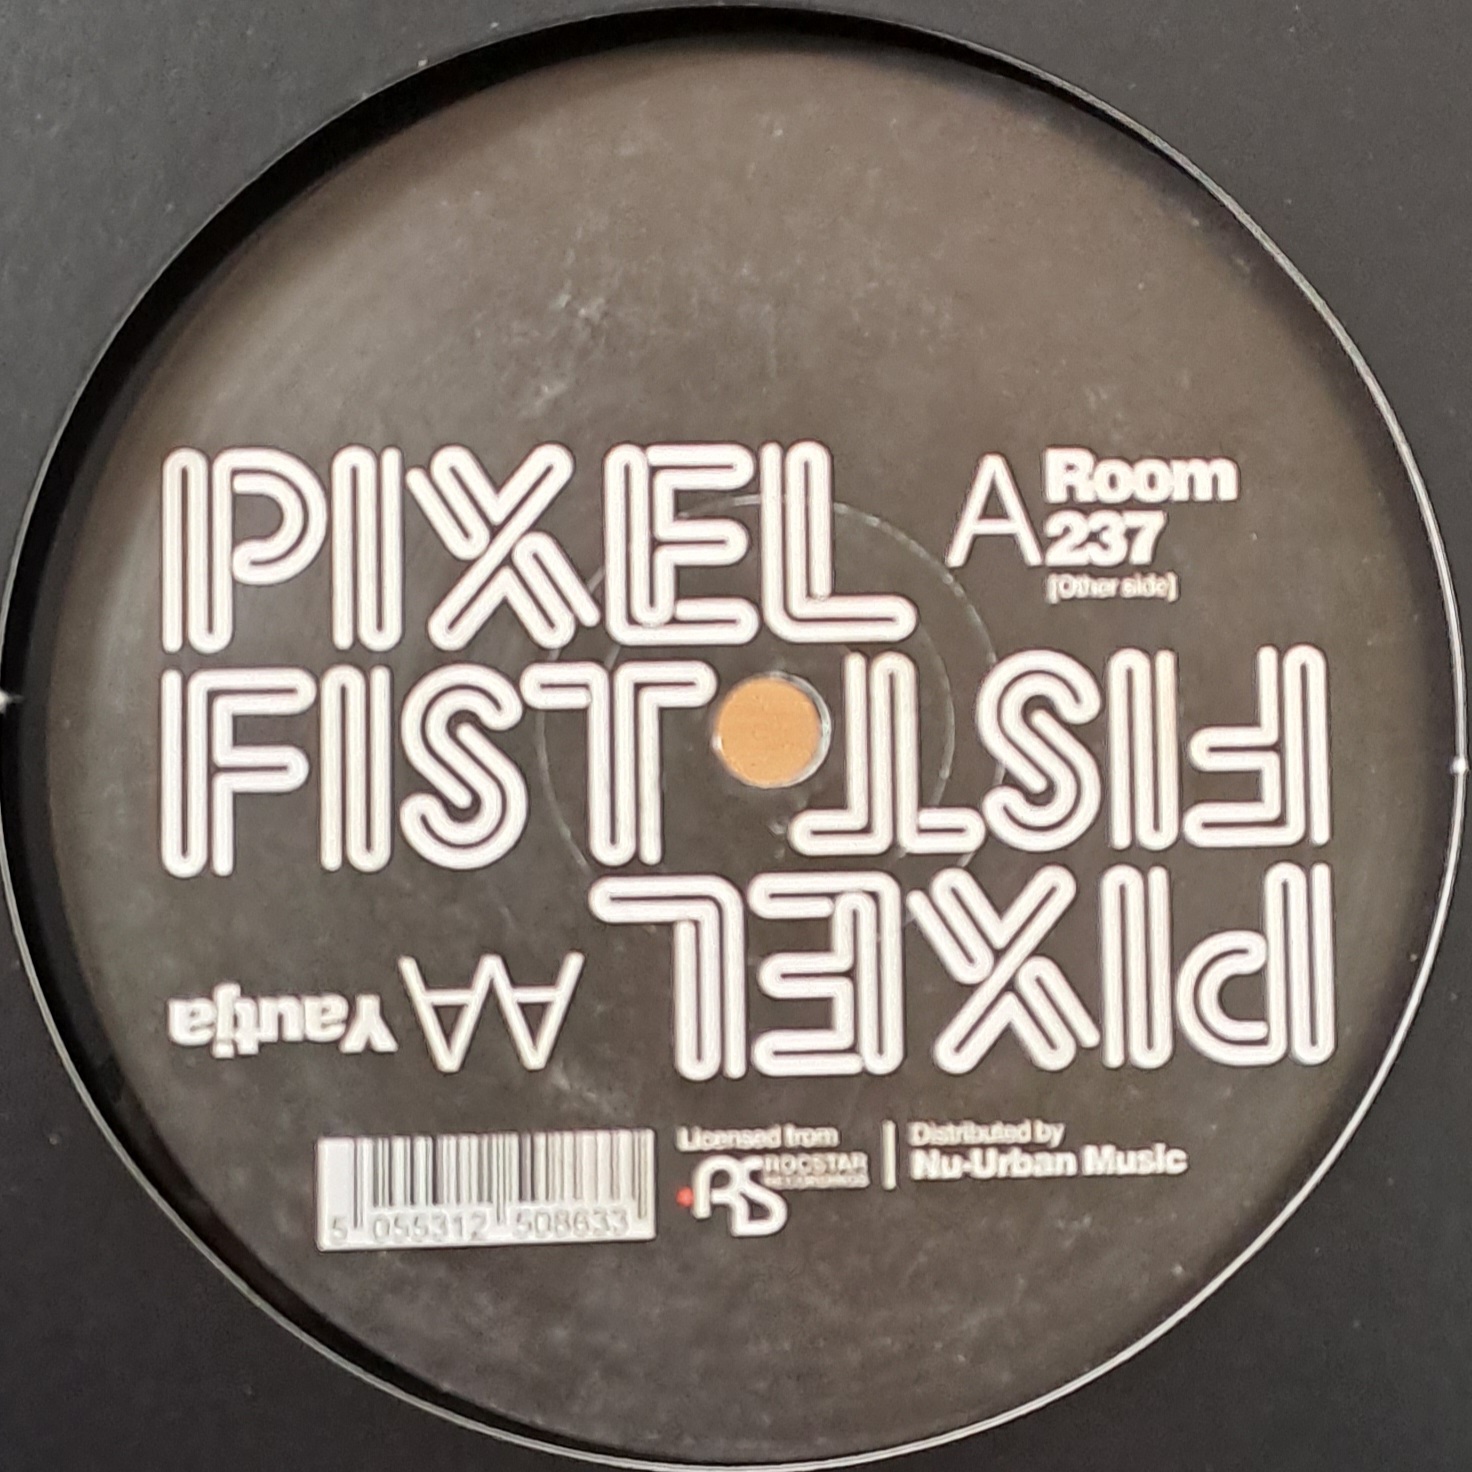 Pixel 02 - vinyle dubstep